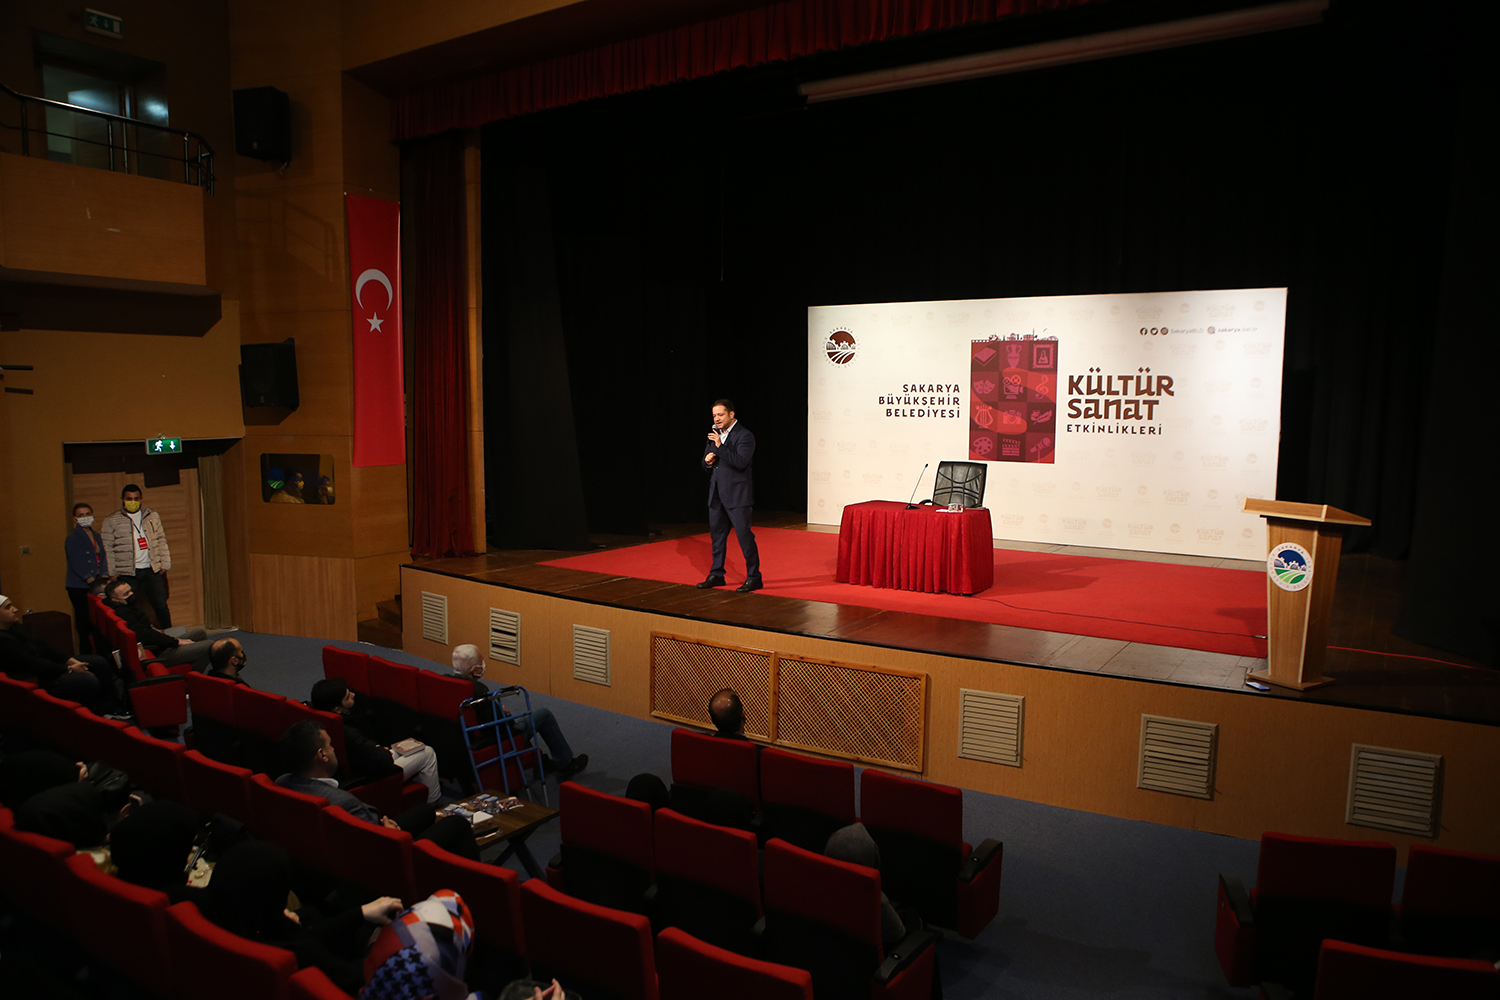 Ocak Kültür Sanat Etkinliklerine Doç. Dr. Yasin Pişgin’in konuşmacı olarak katıldı